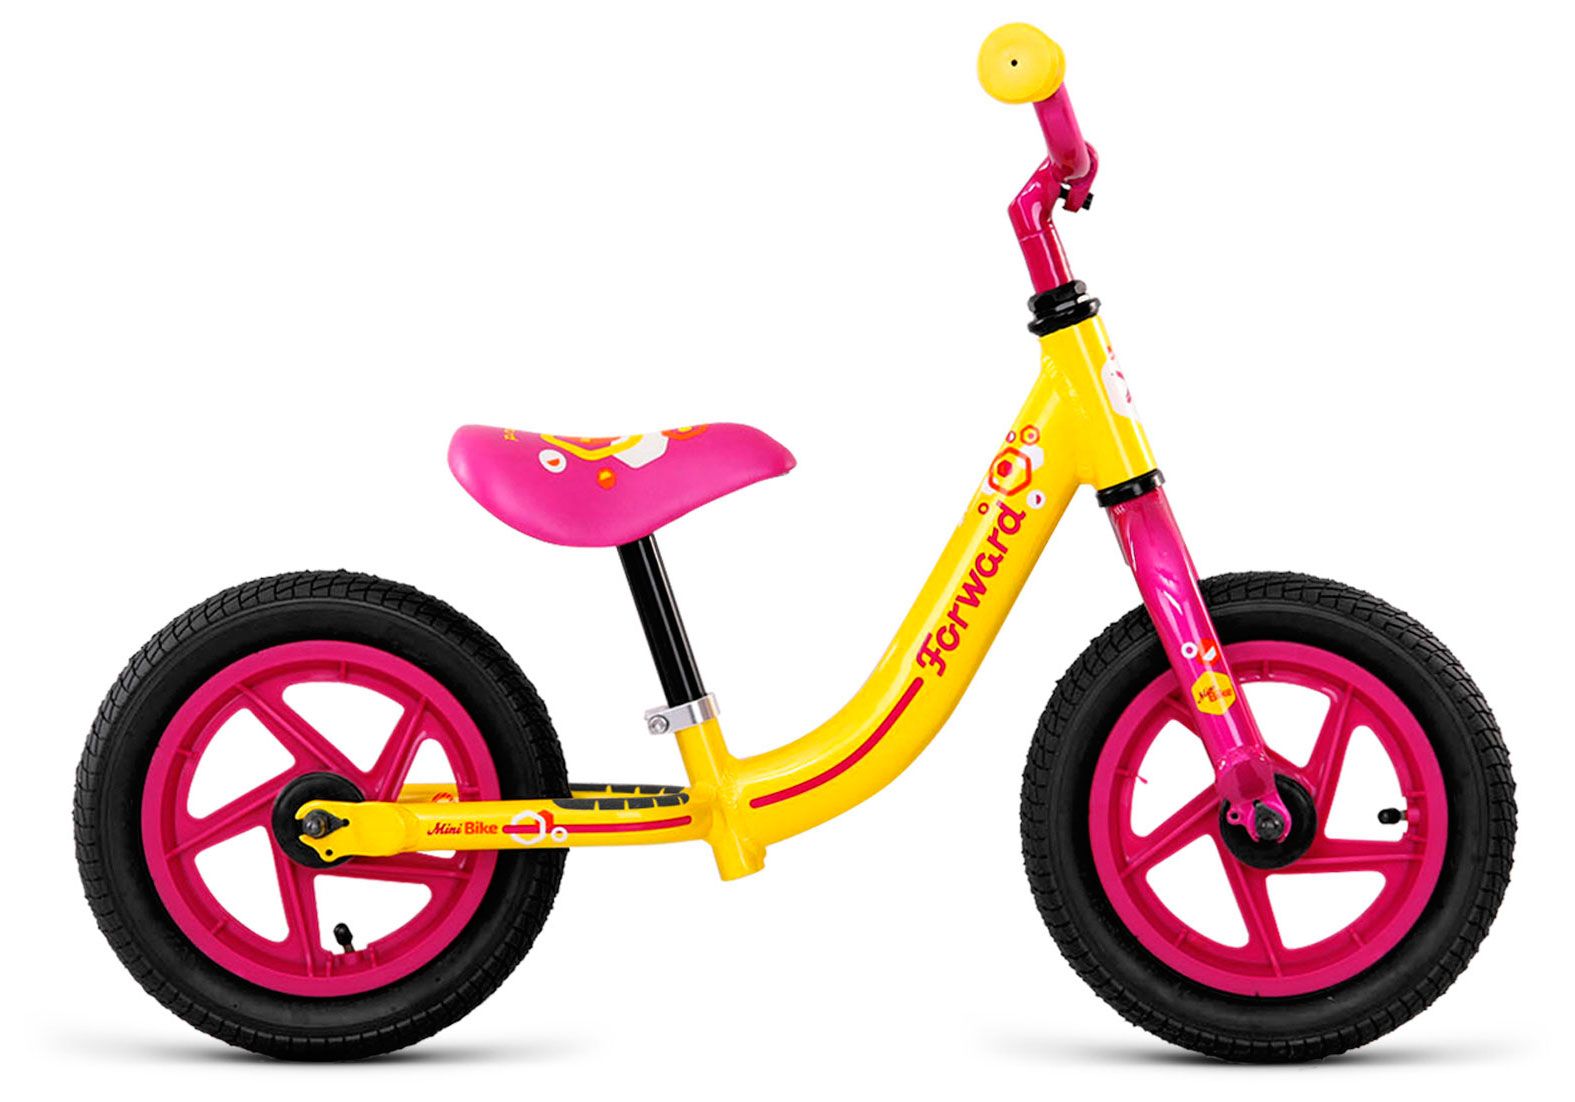  Отзывы о Детском велосипеде Forward Mini Bike 2018